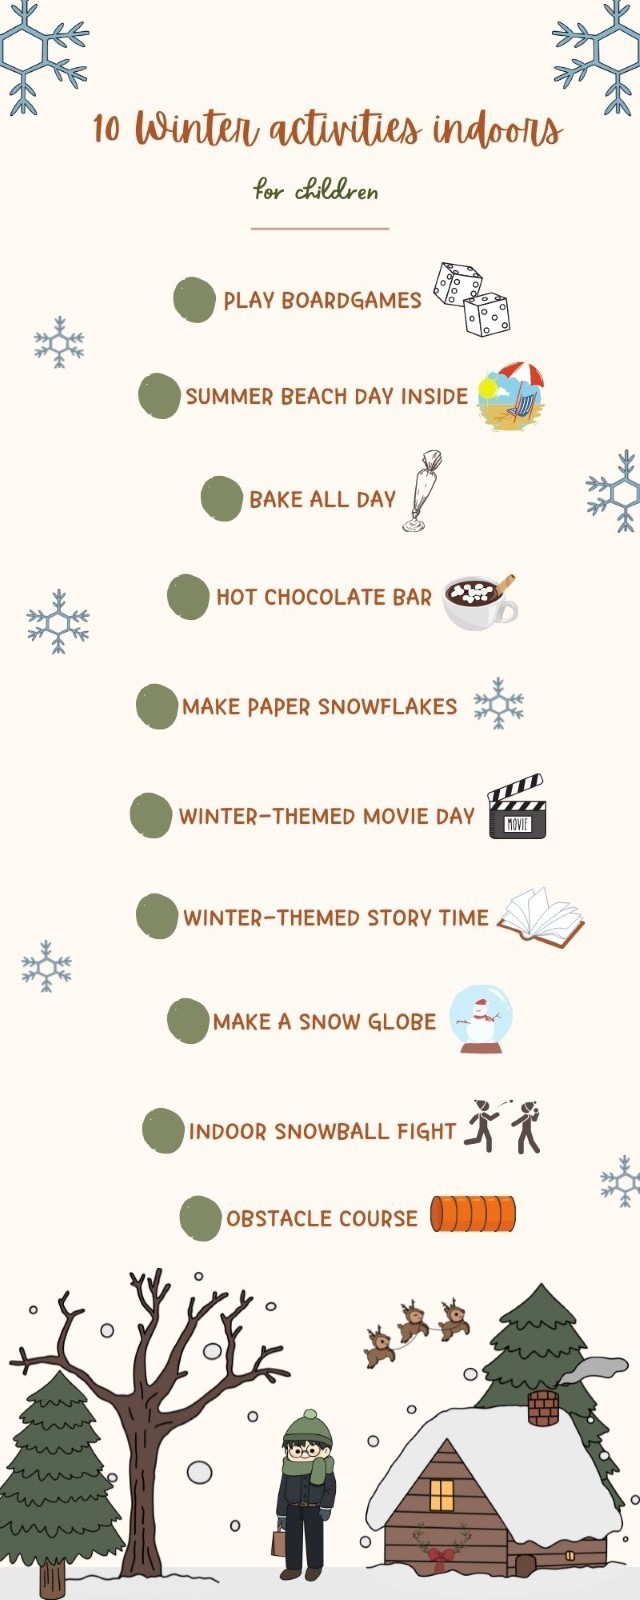 10 Winter activities to do indoors for children - ARTE VIVA